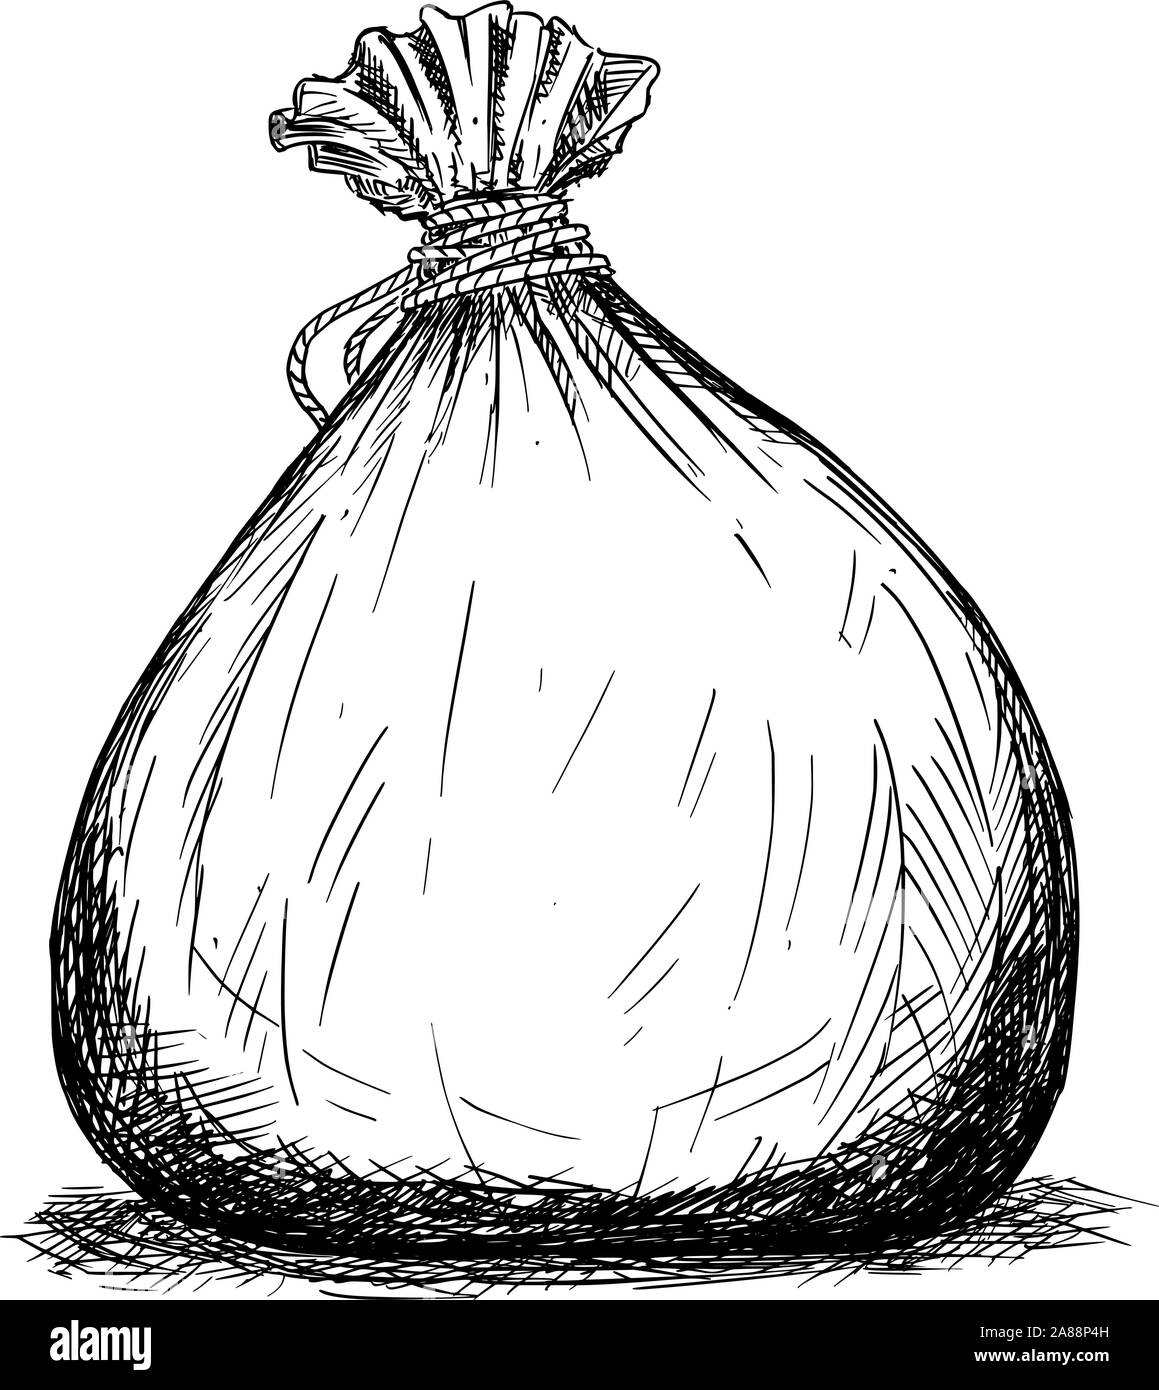 Vector cartoon in bianco e nero disegno illustrazione della busta o sacca , possibilmente piena di denaro. Illustrazione Vettoriale